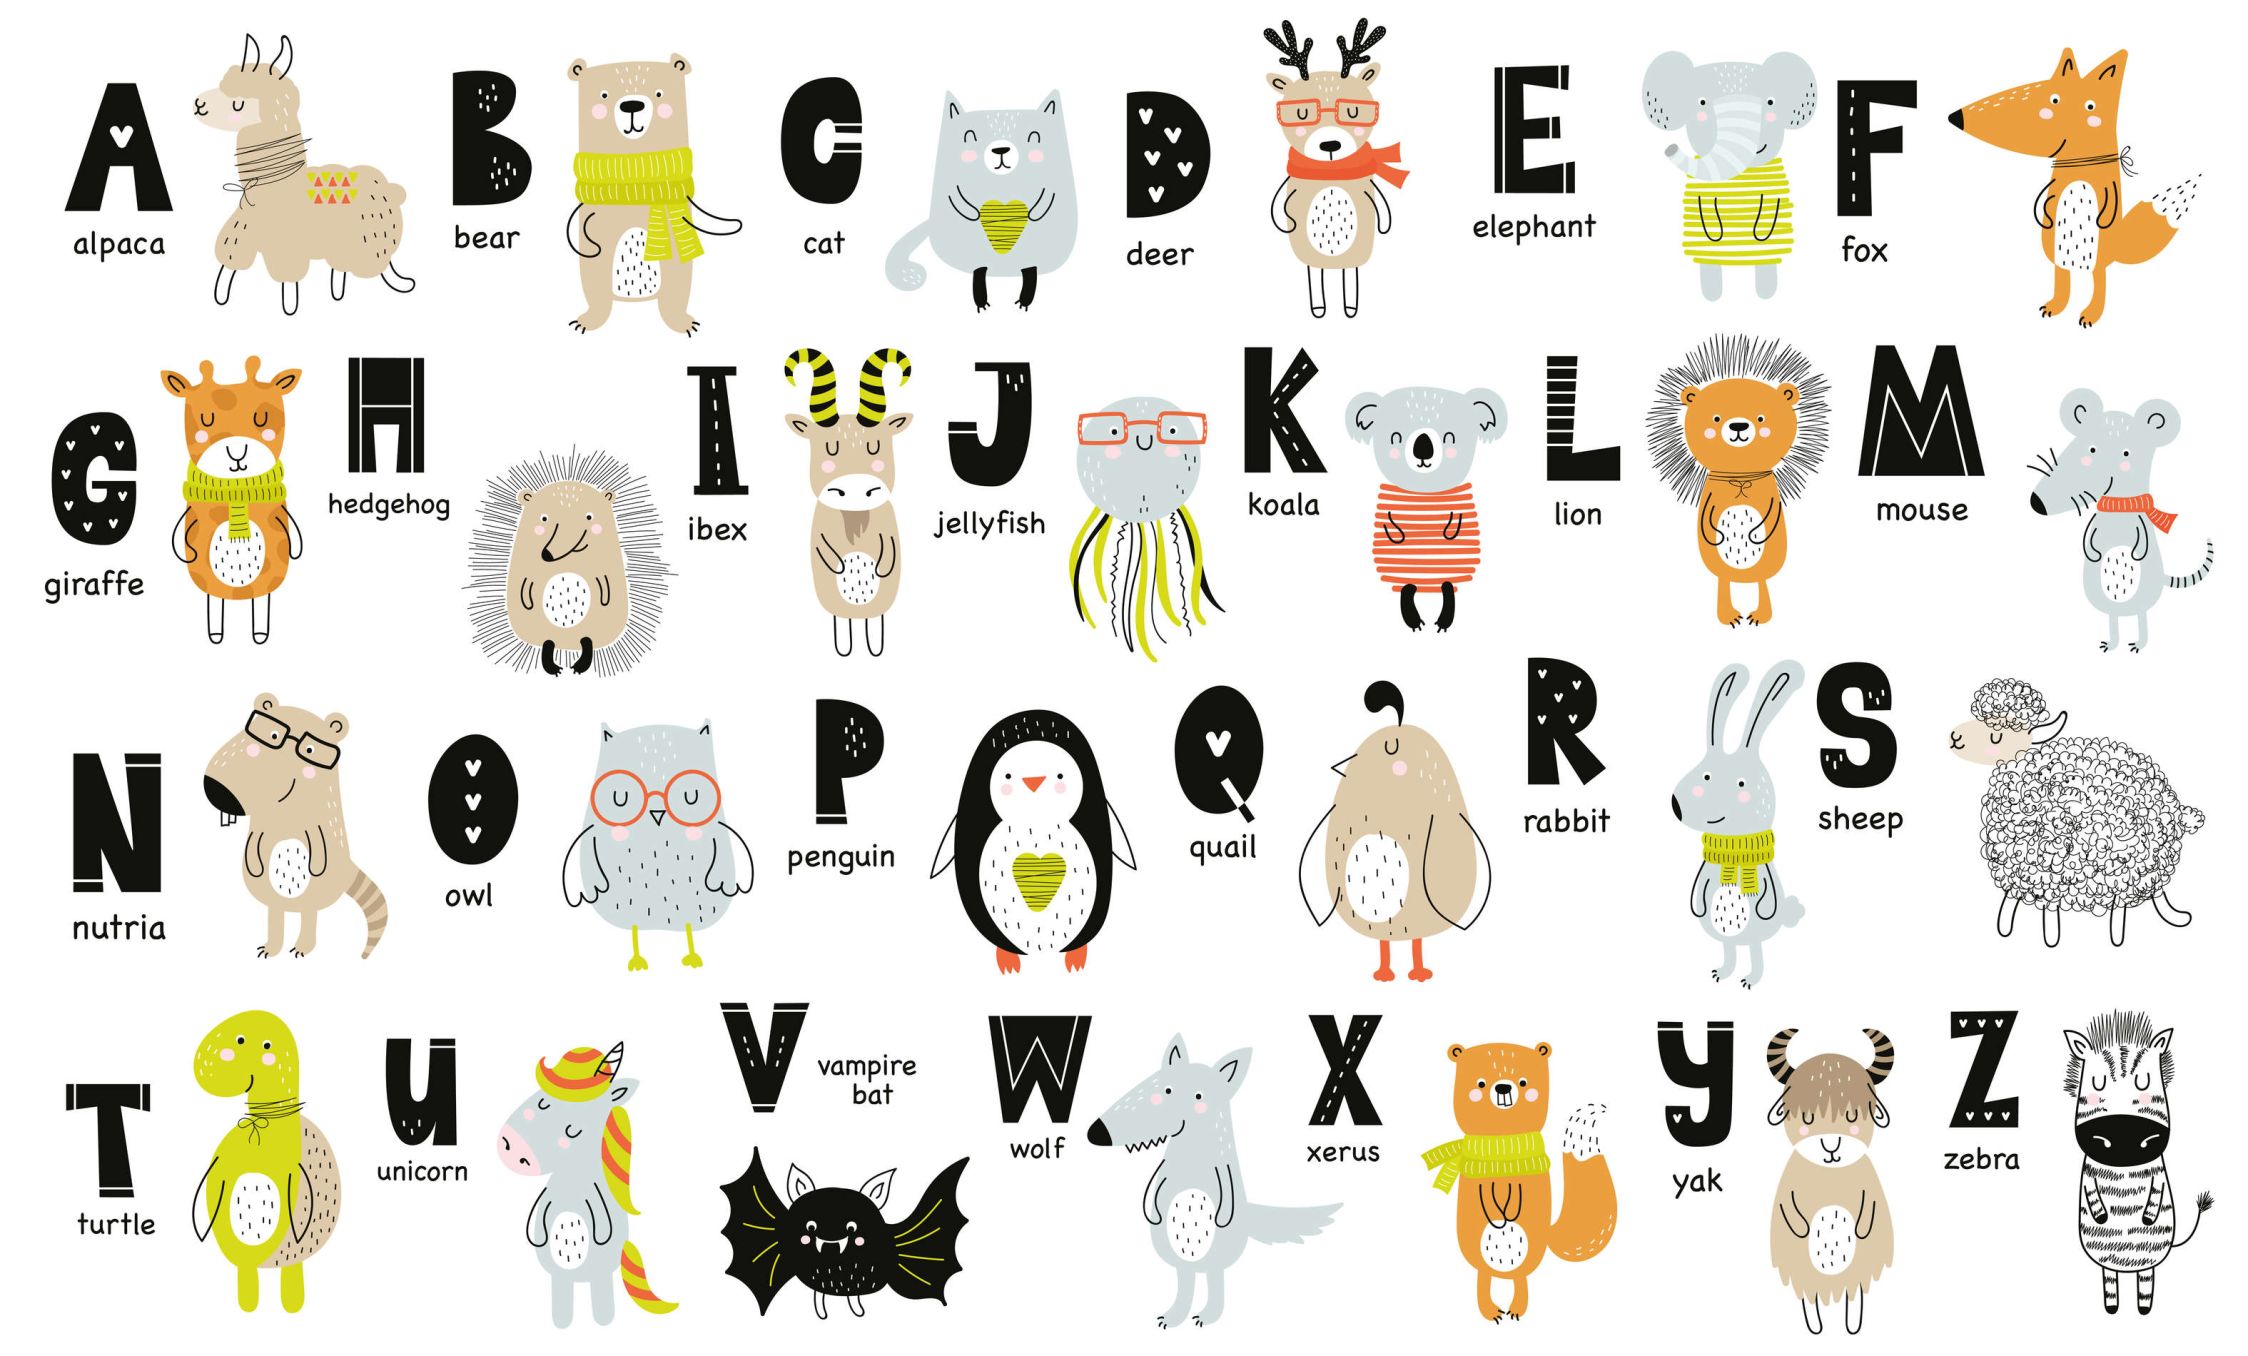             papiers peints à impression numérique Alphabet avec animaux et noms d'animaux - intissé structuré
        